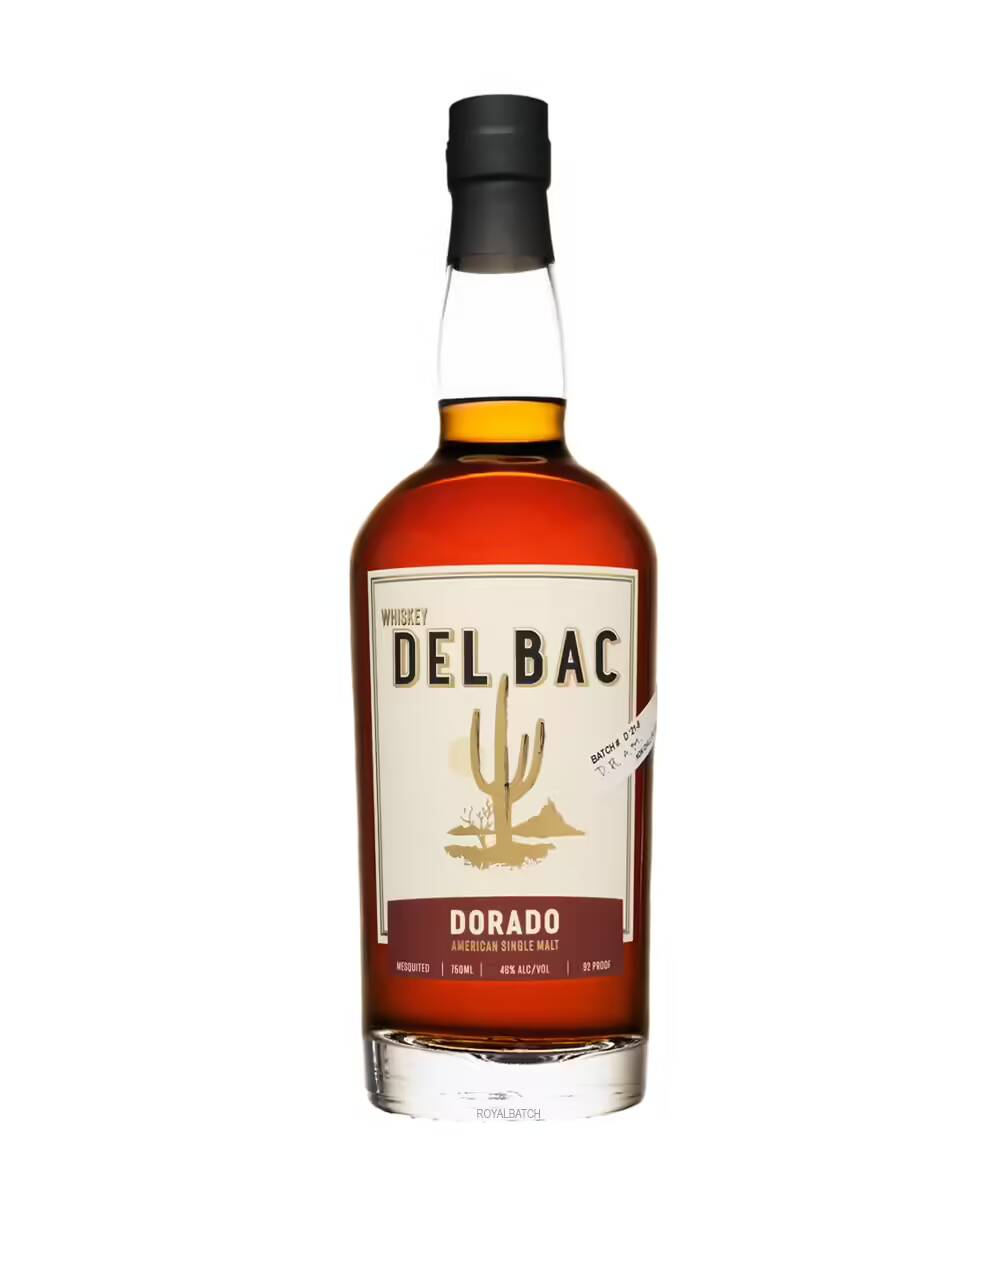 Del Bac Dorado American Single Malt Whiskey